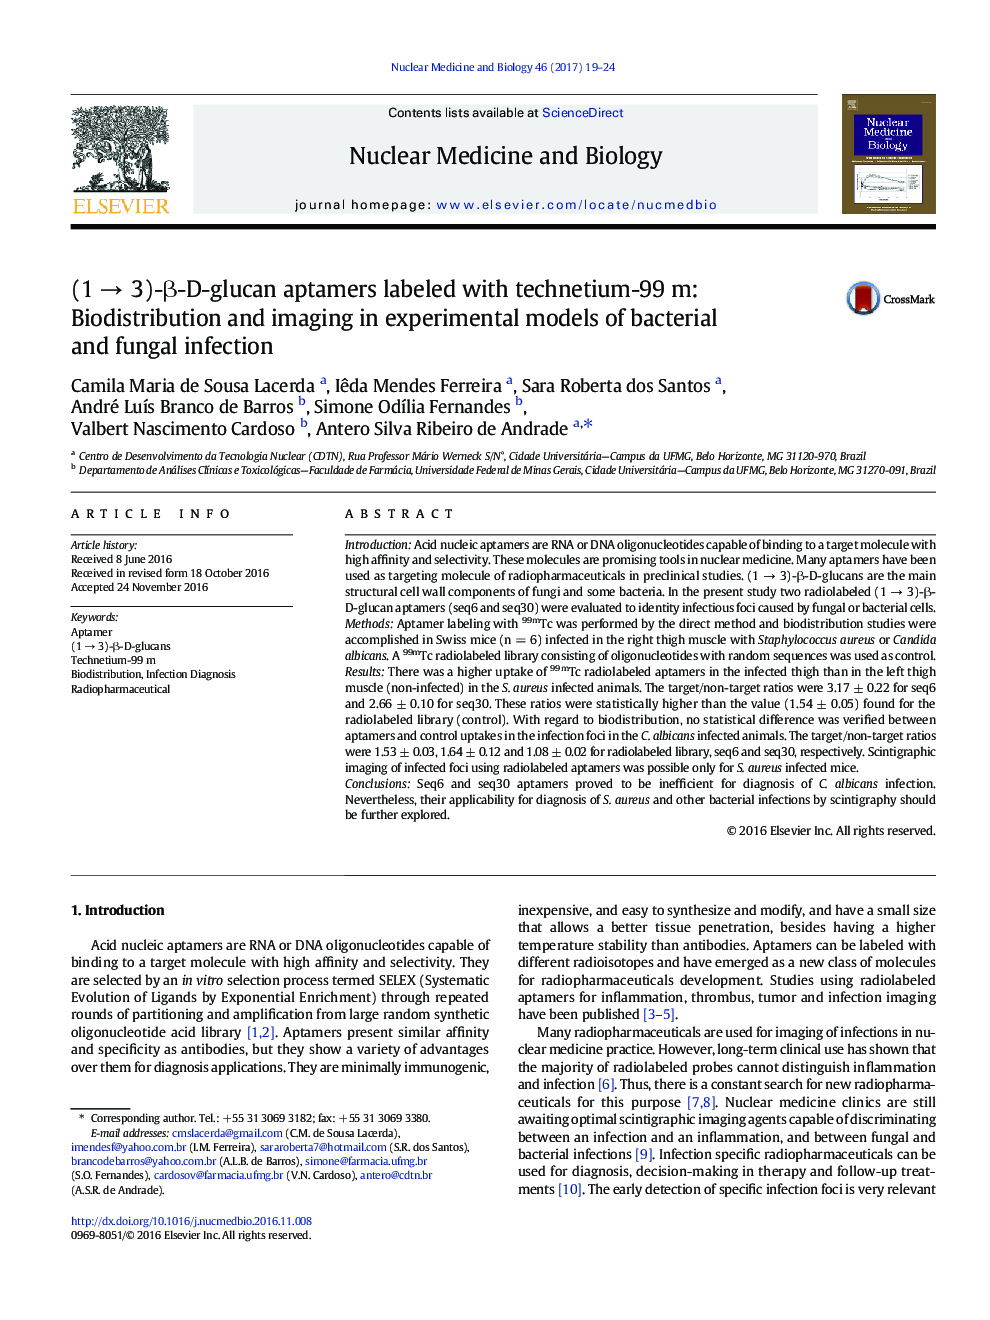 (1Â âÂ 3)-Î²-D-glucan aptamers labeled with technetium-99Â m: Biodistribution and imaging in experimental models of bacterial and fungal infection